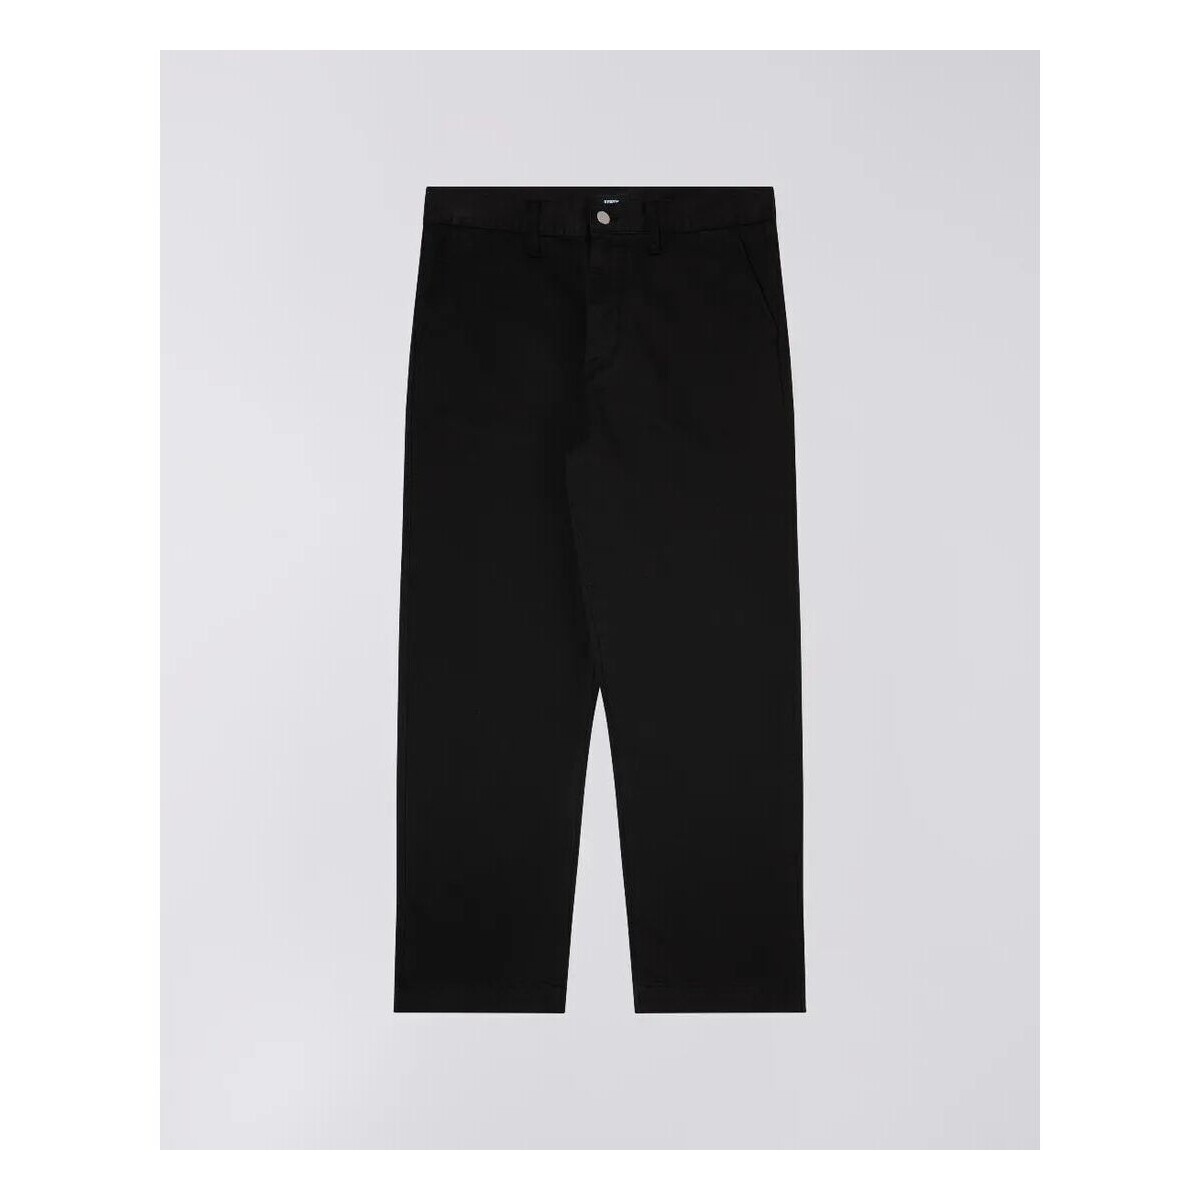 Vêtements Homme Pantalons Edwin I031965.89.GD.00 JAGA-BLACK Noir